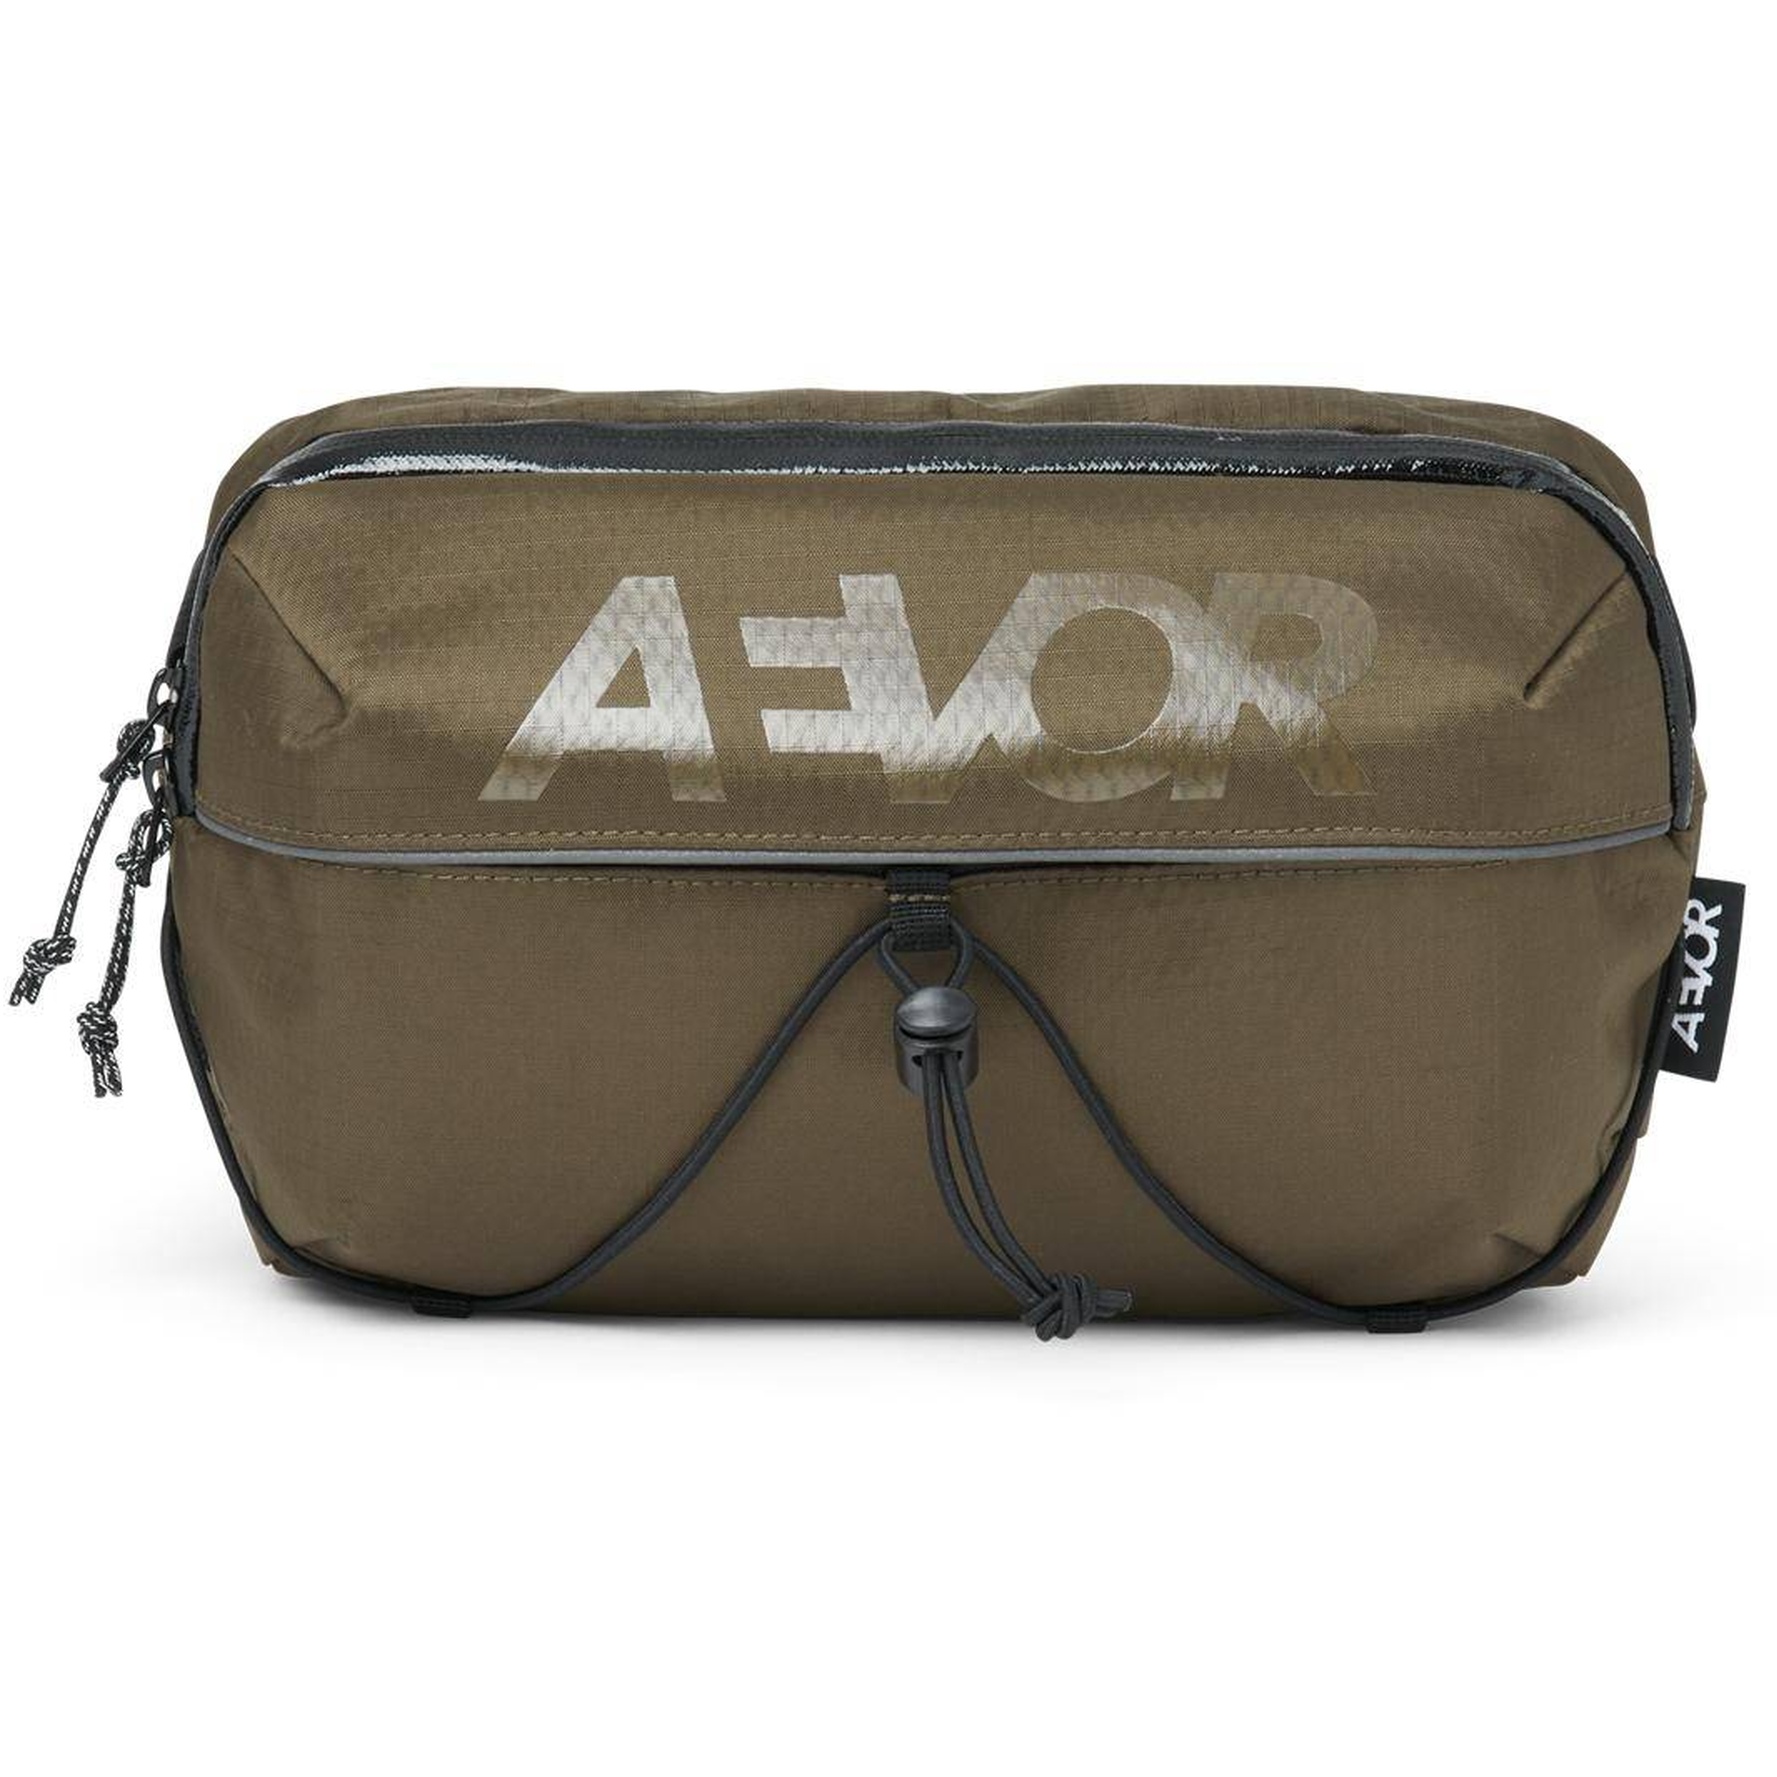 Produktbild von AEVOR Bar Bag Hüfttasche- / Lenkertasche - Proof Olive Gold